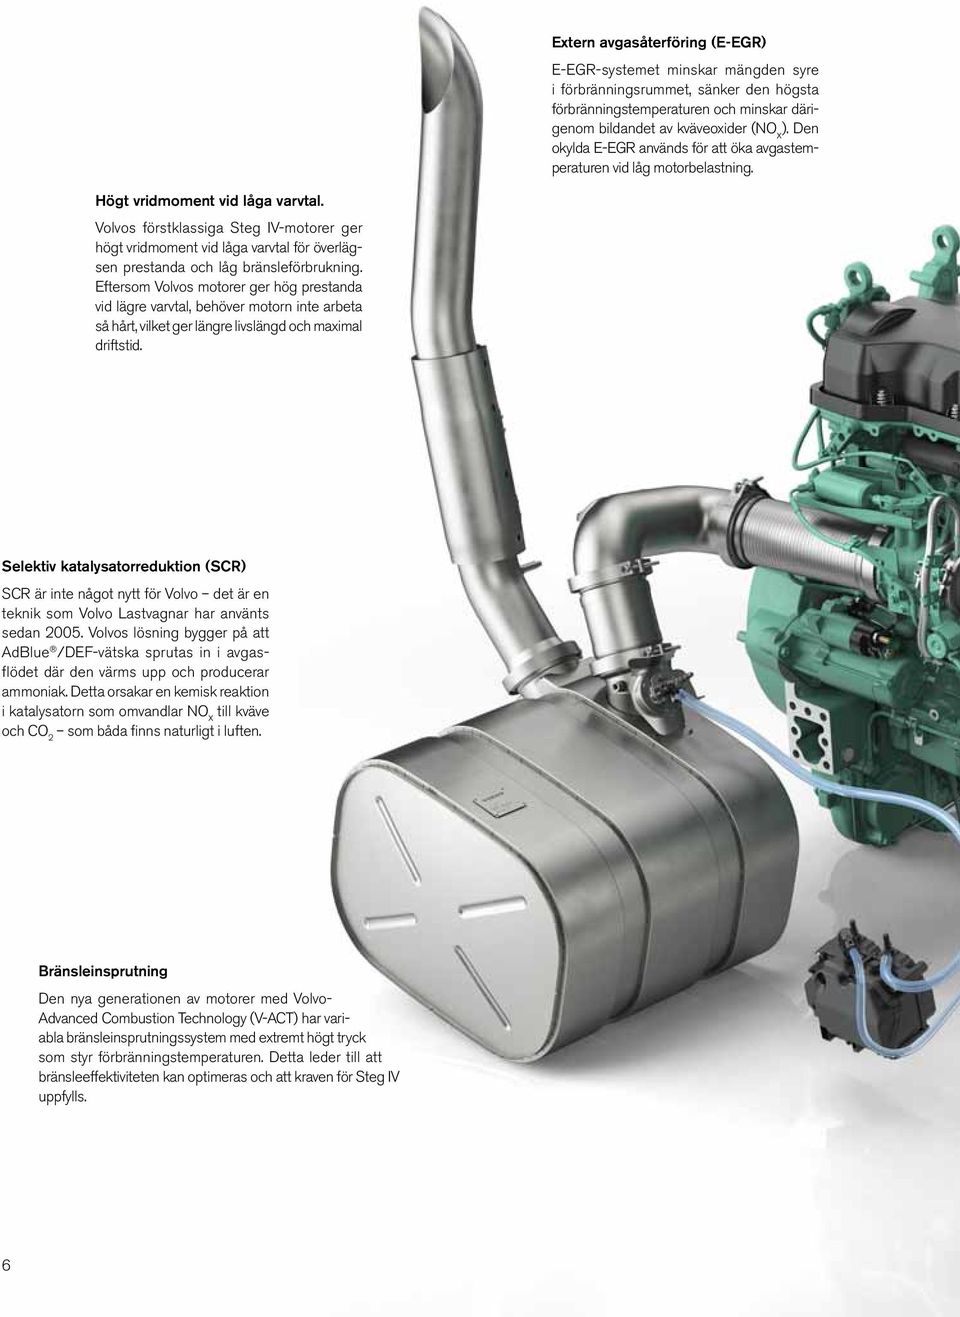 Volvos förstklassiga Steg IV-motorer ger högt vridmoment vid låga varvtal för överlägsen prestanda och låg bränsleförbrukning.